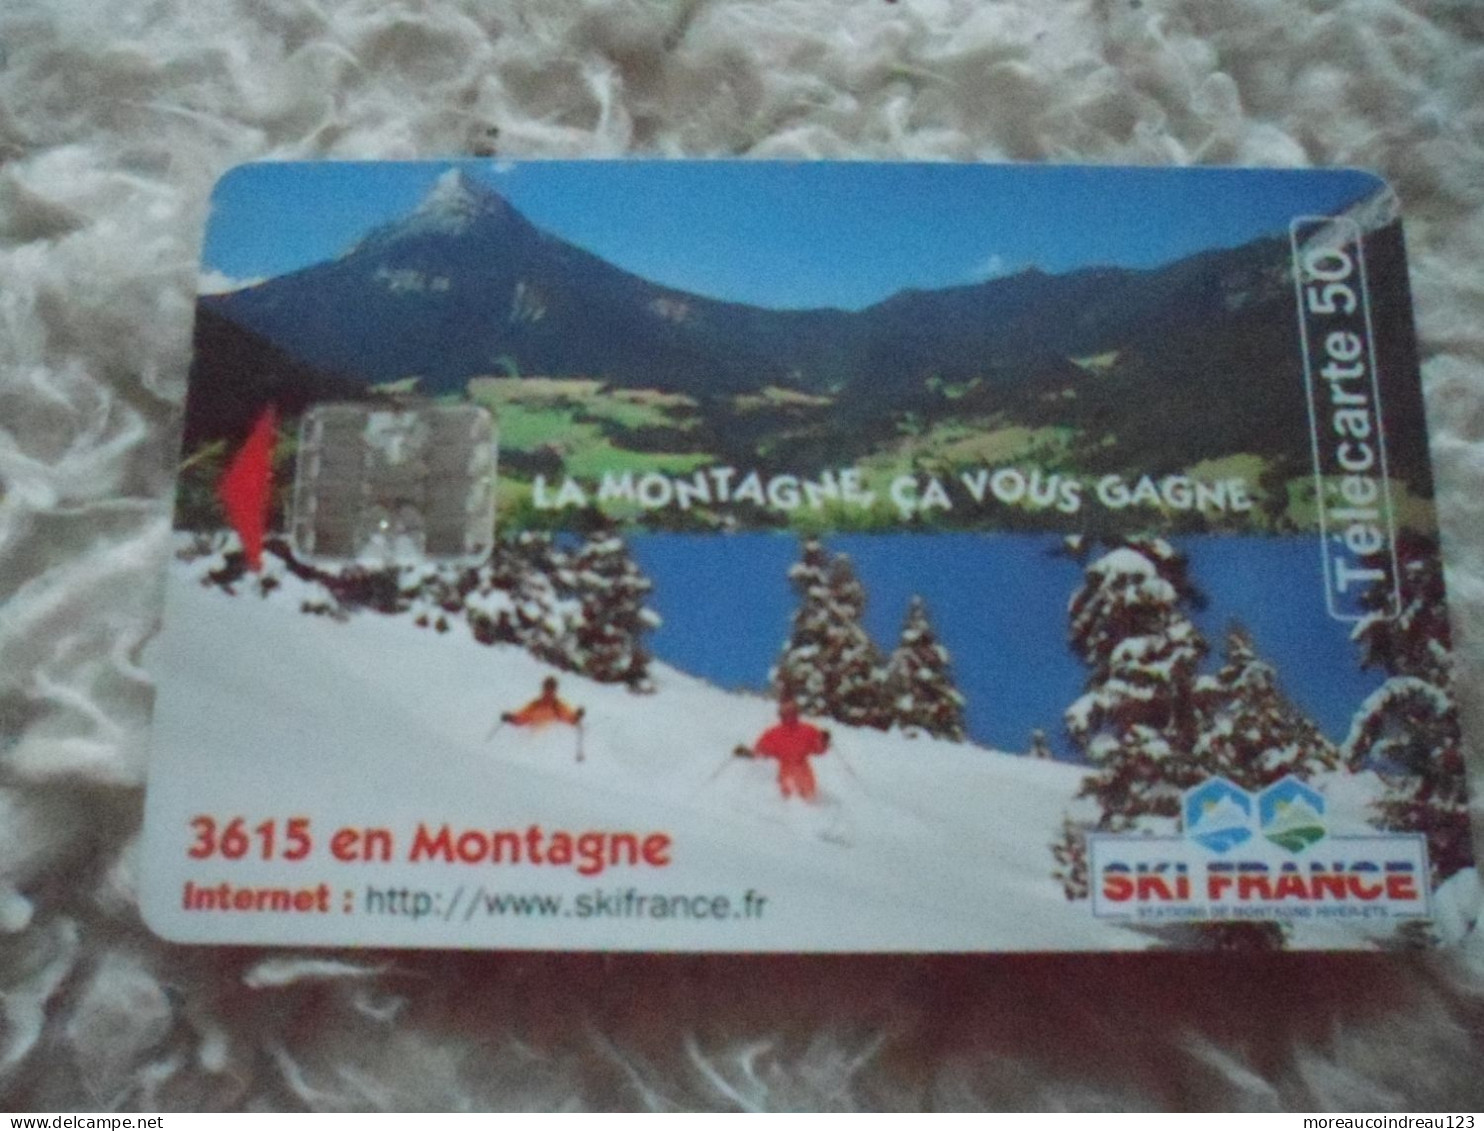 Télécarte Ski France La Montagne Ca Vous Gagne - Operatori Telecom